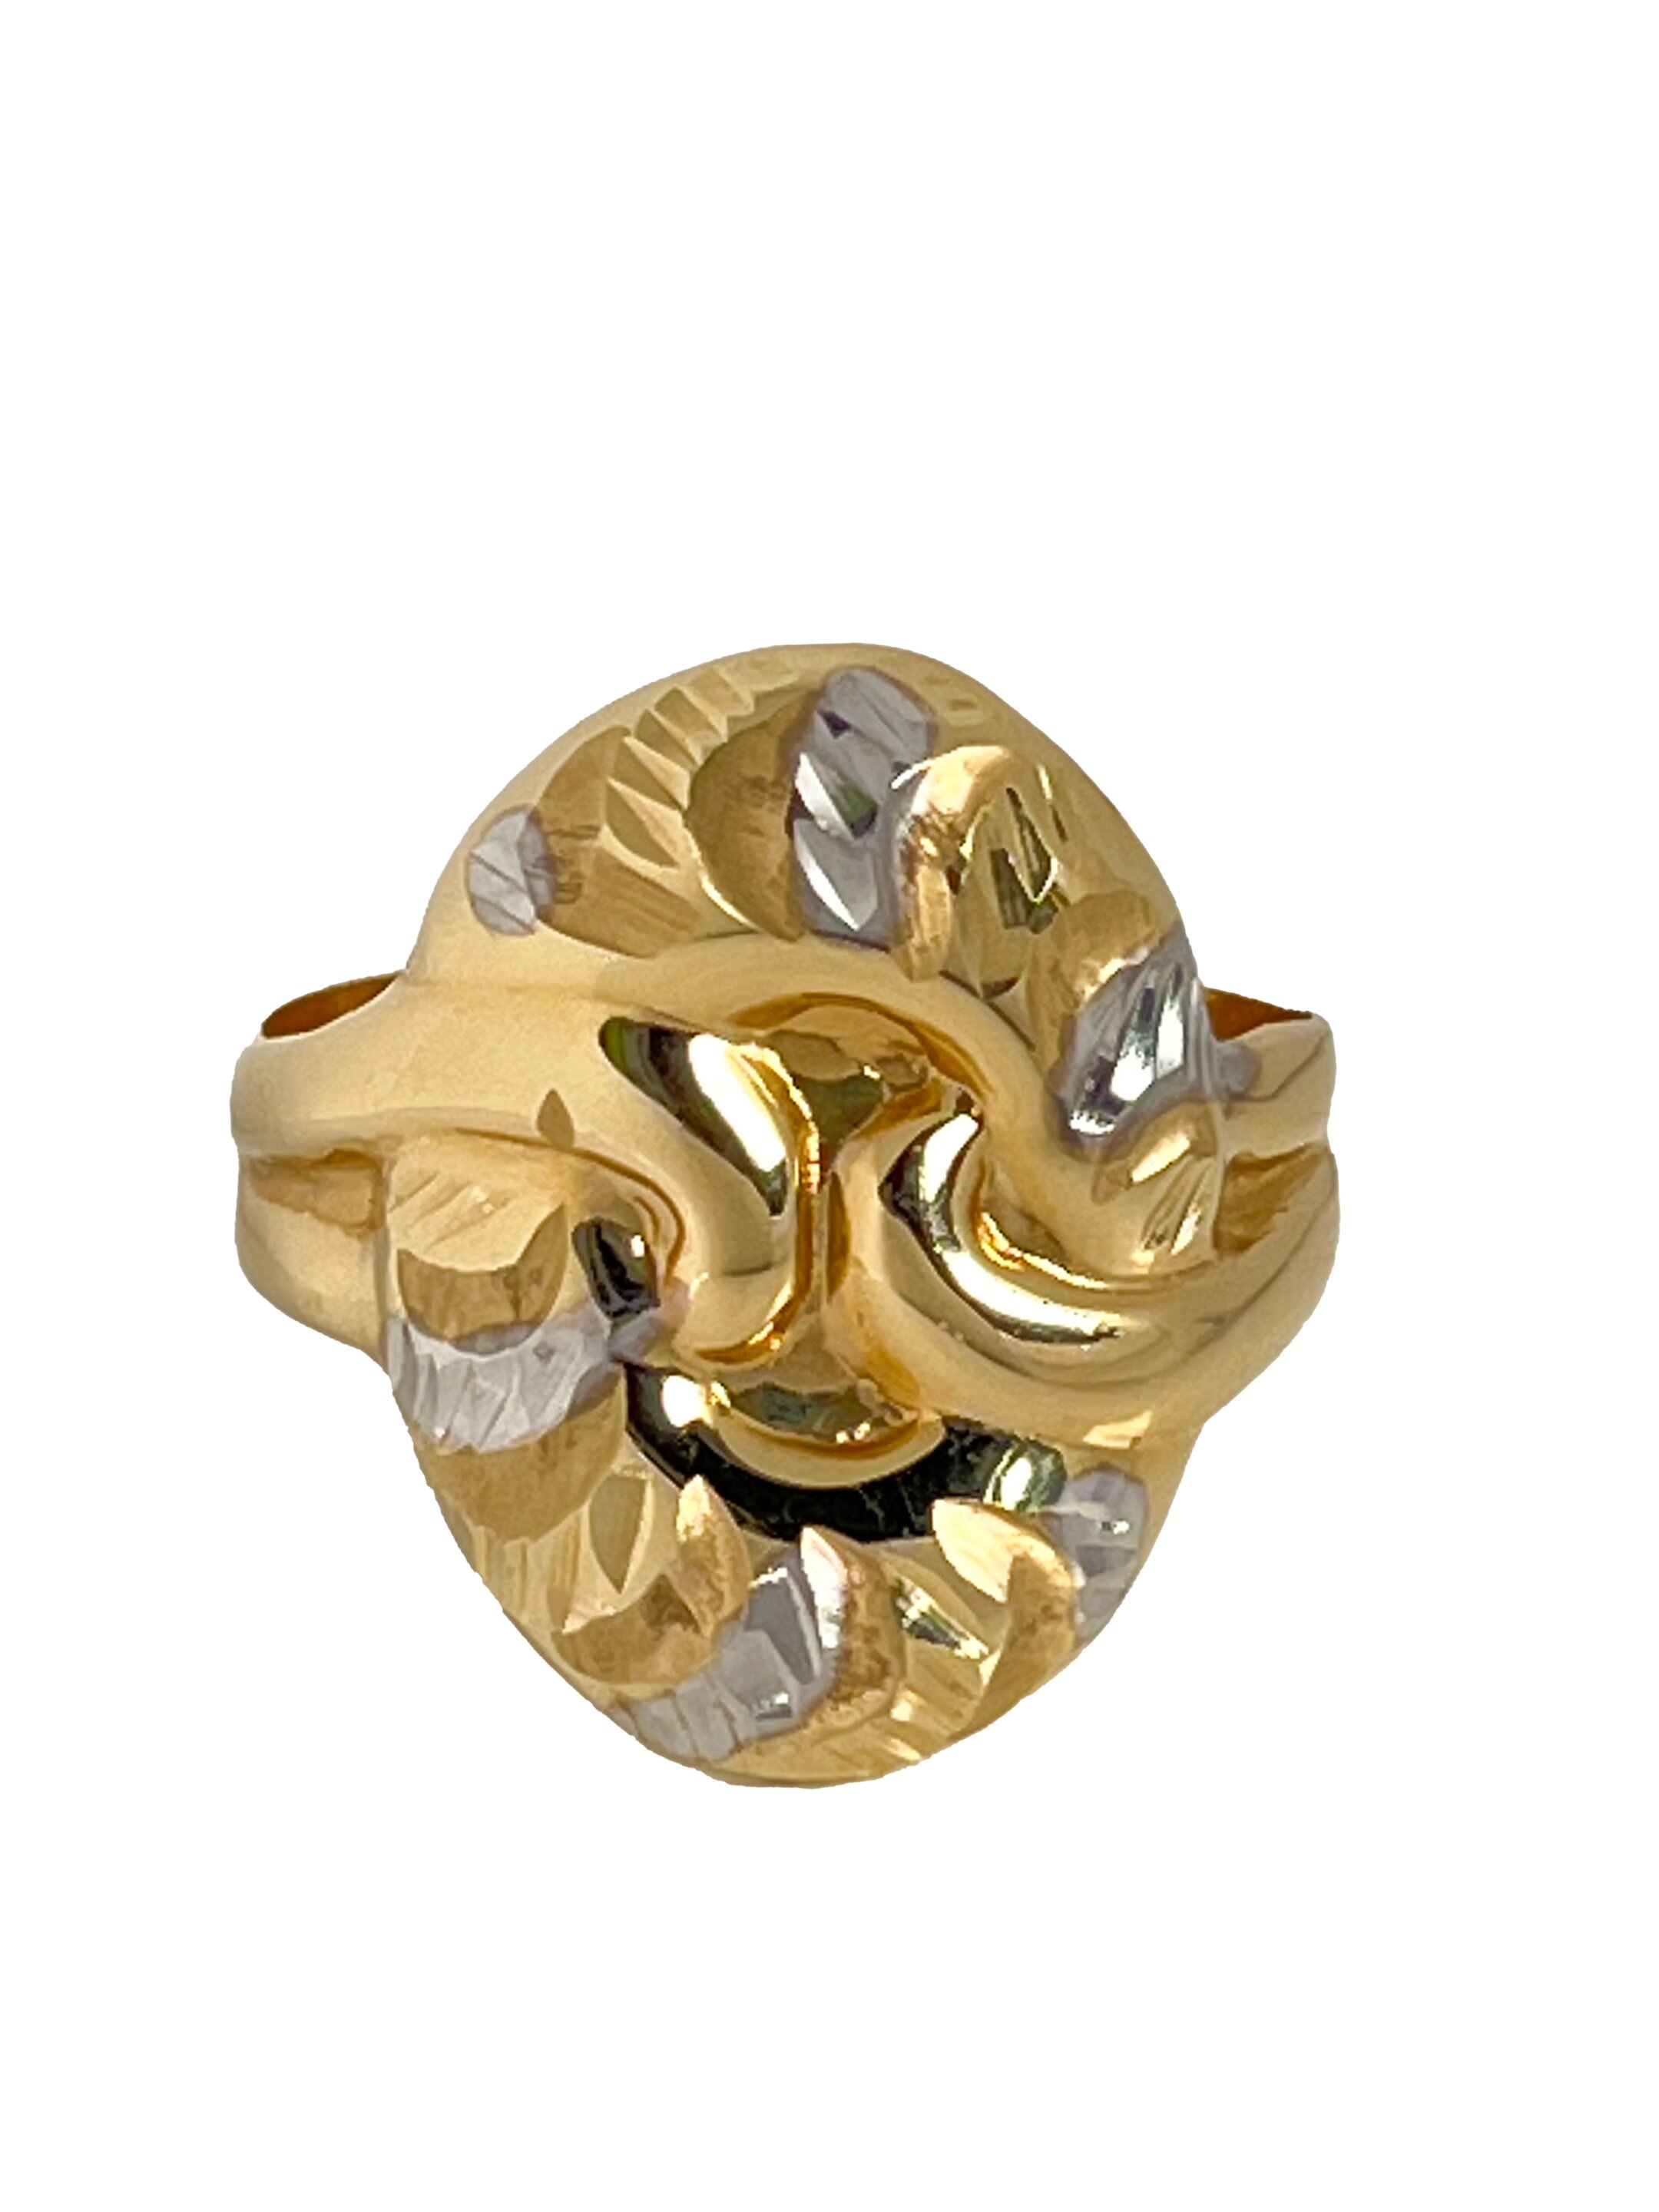 Auksinis žiedas iš geltono ir balto aukso išgraviruotas